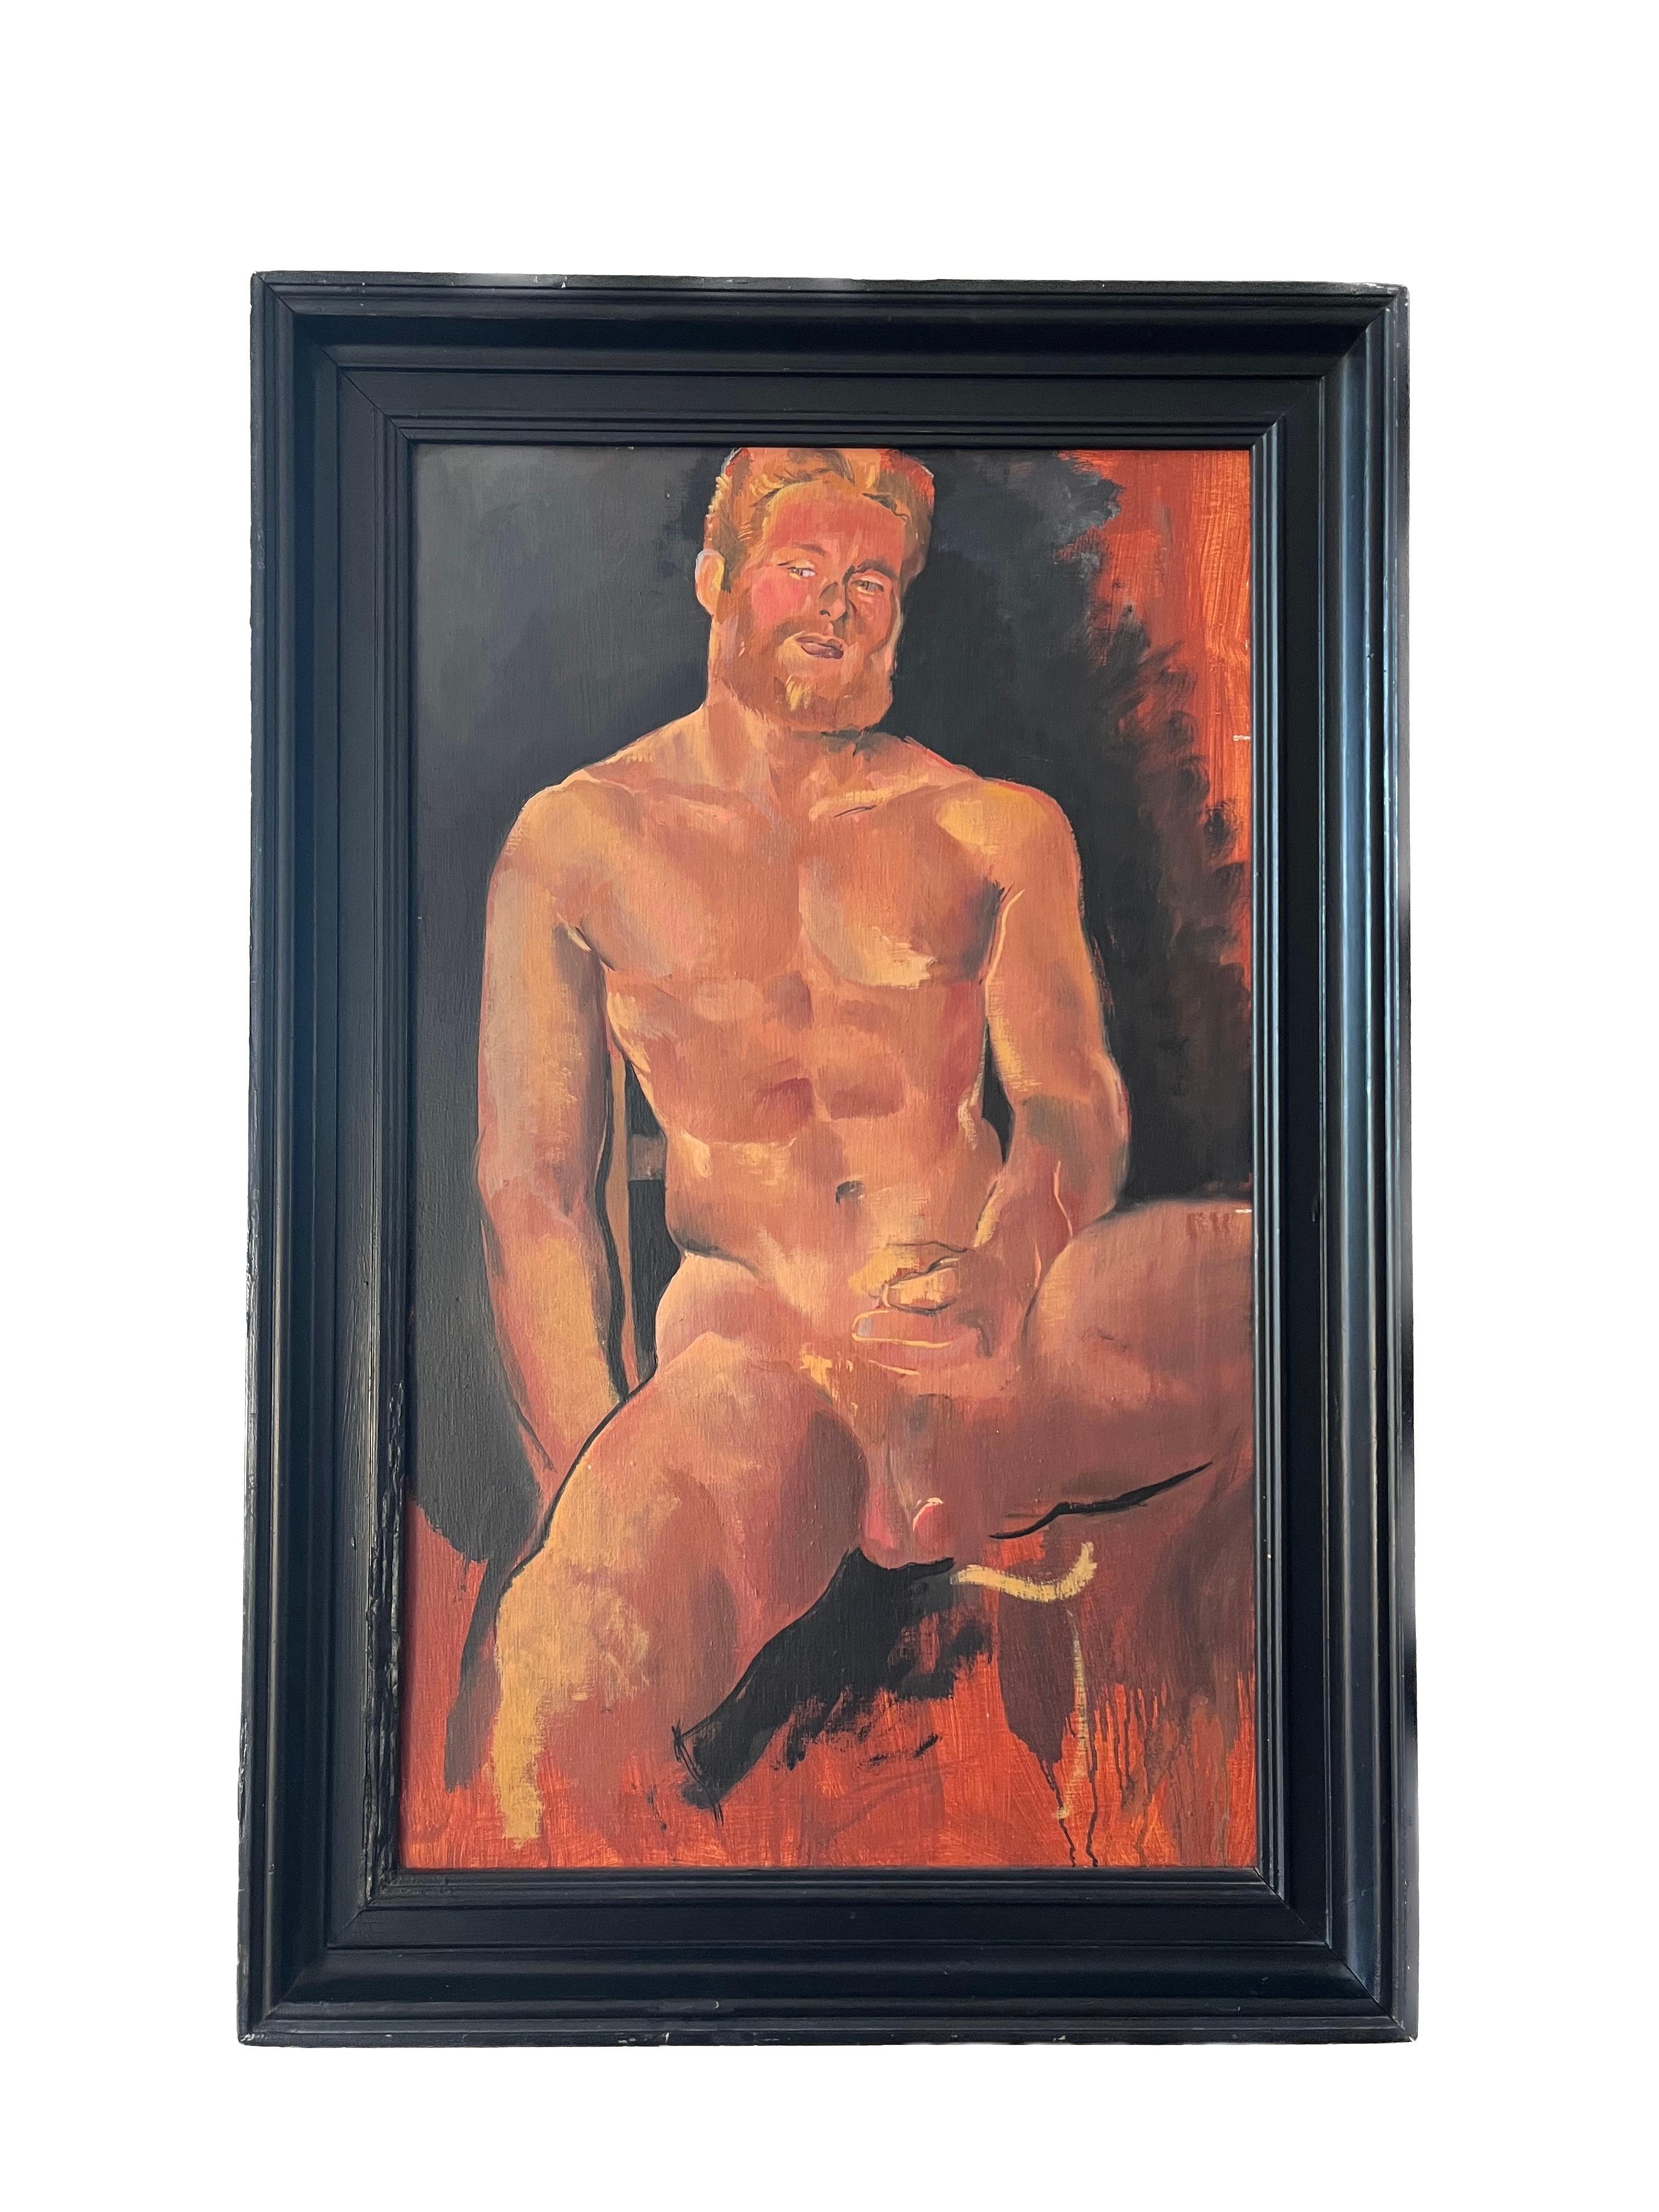 1980er Jahre Erotischer männlicher Akt, Porträt des Liebhabers des Künstlers, ikonisches Stück aus der Geschichte der Homosexualität